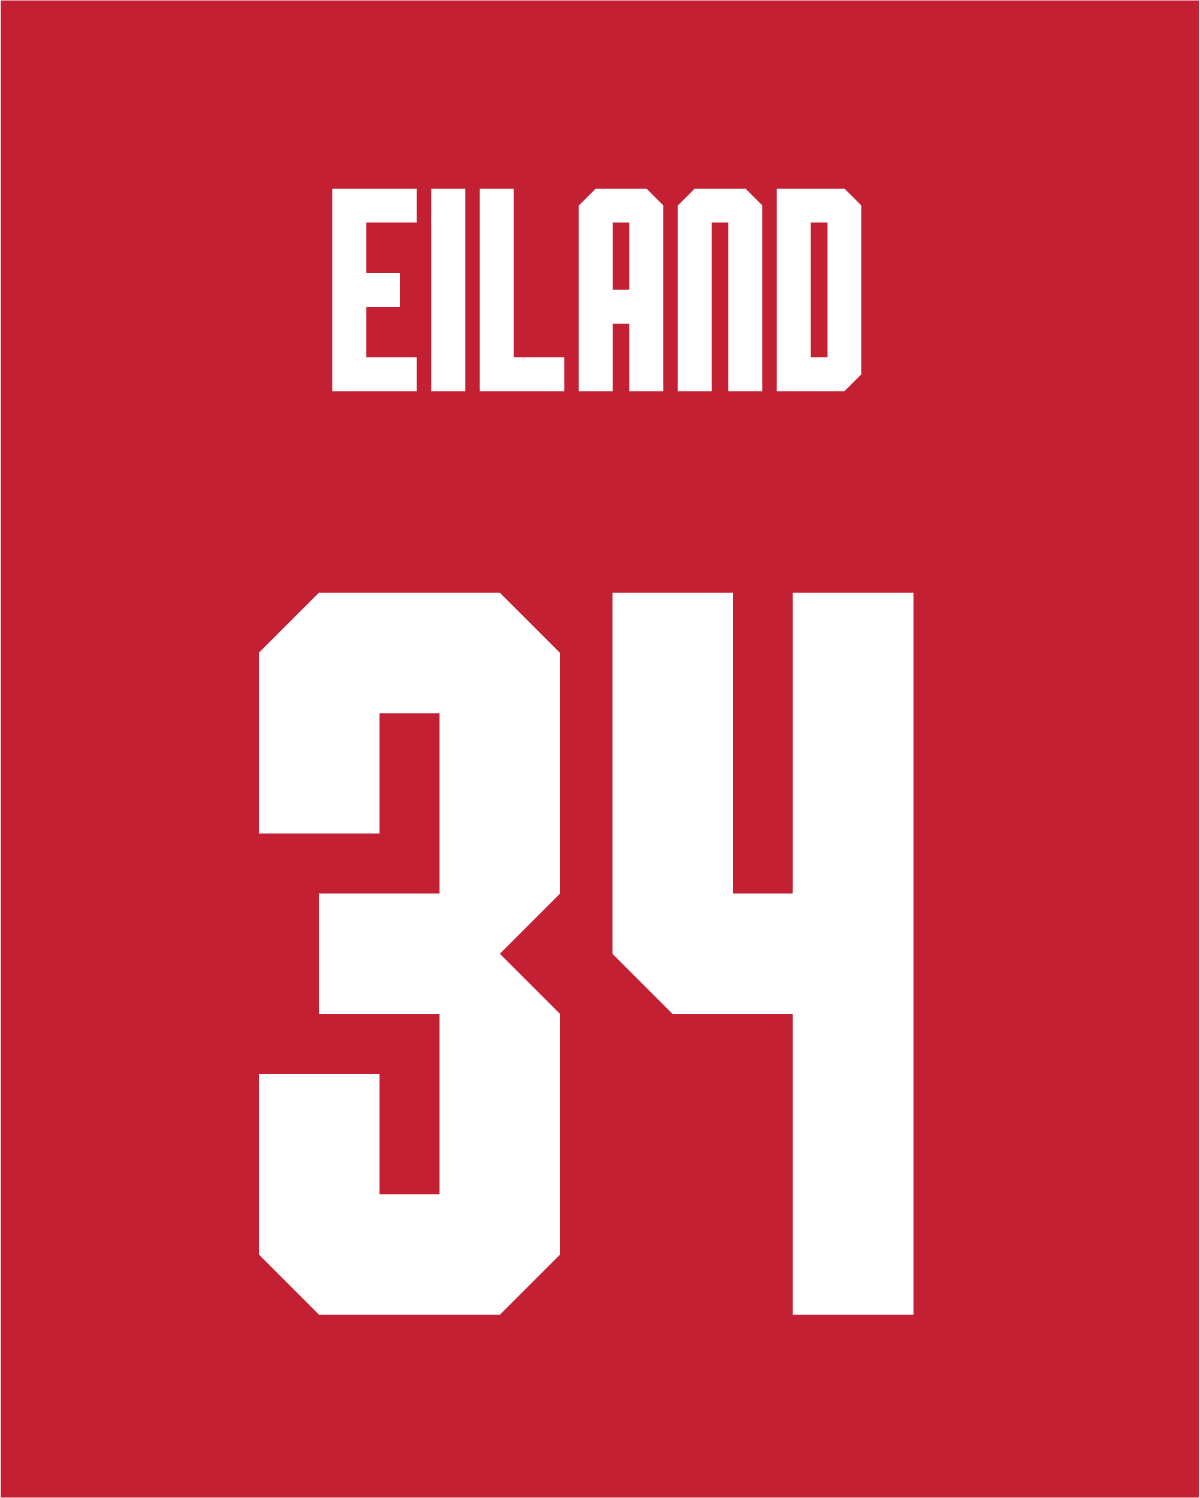 Blake Eiland | #34